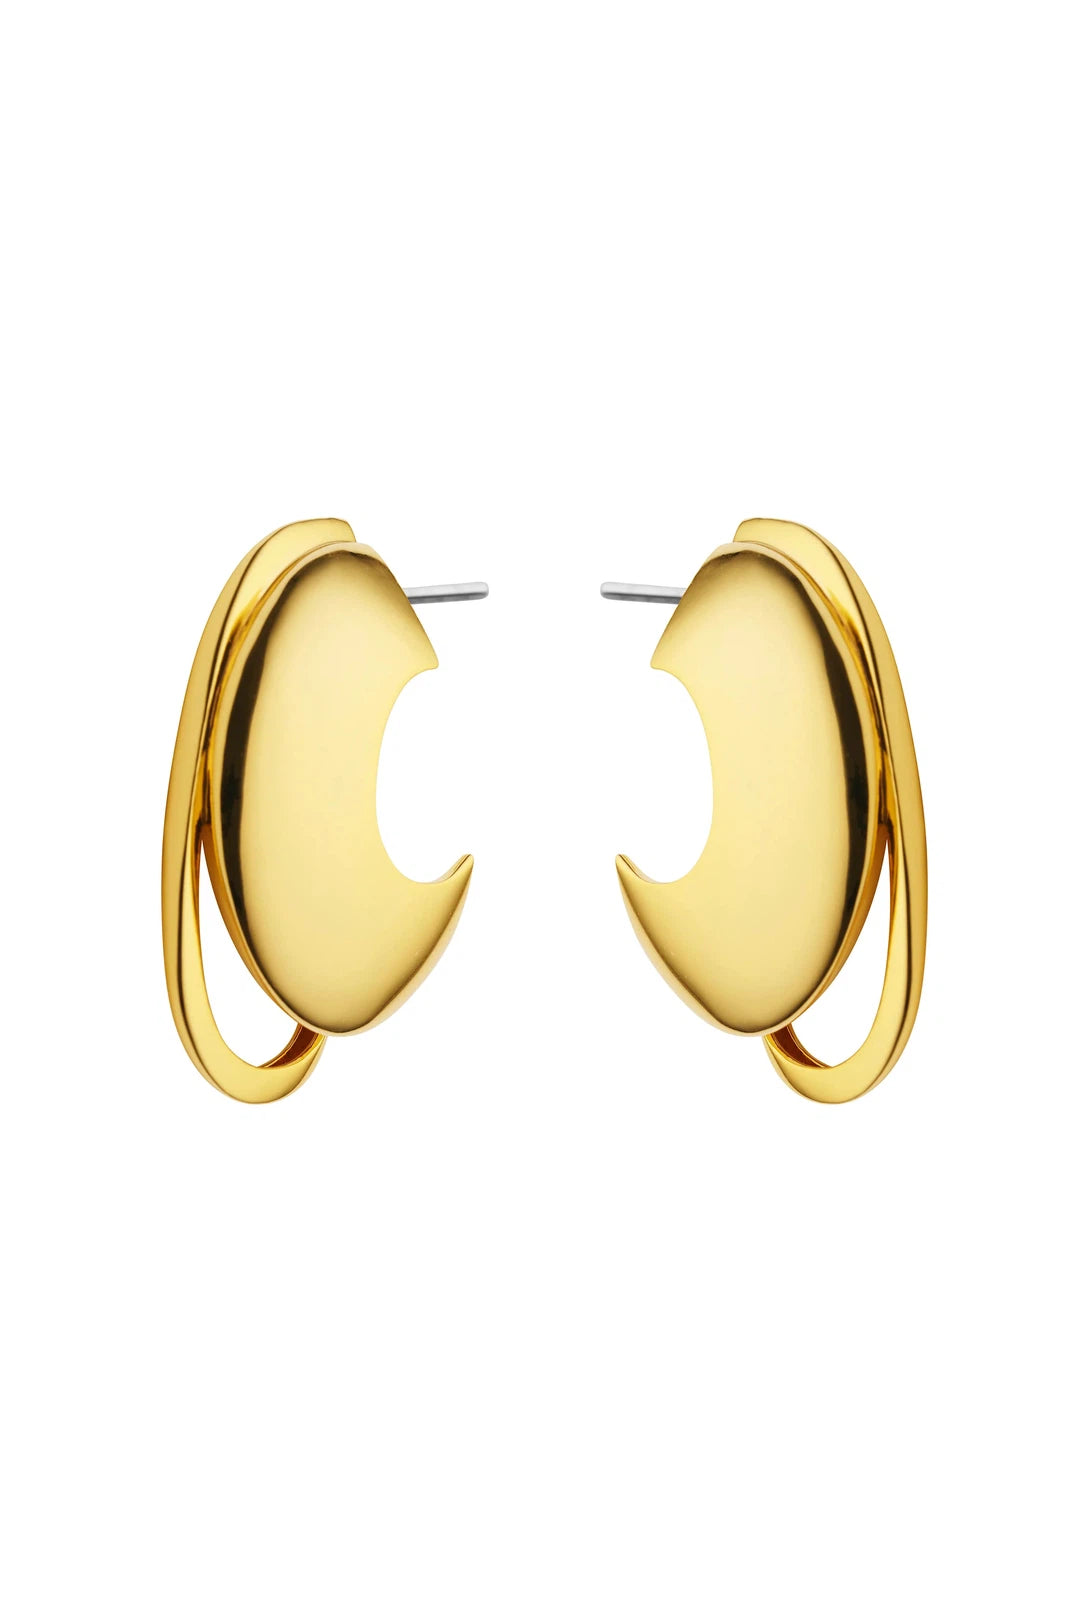 Vessie earrings